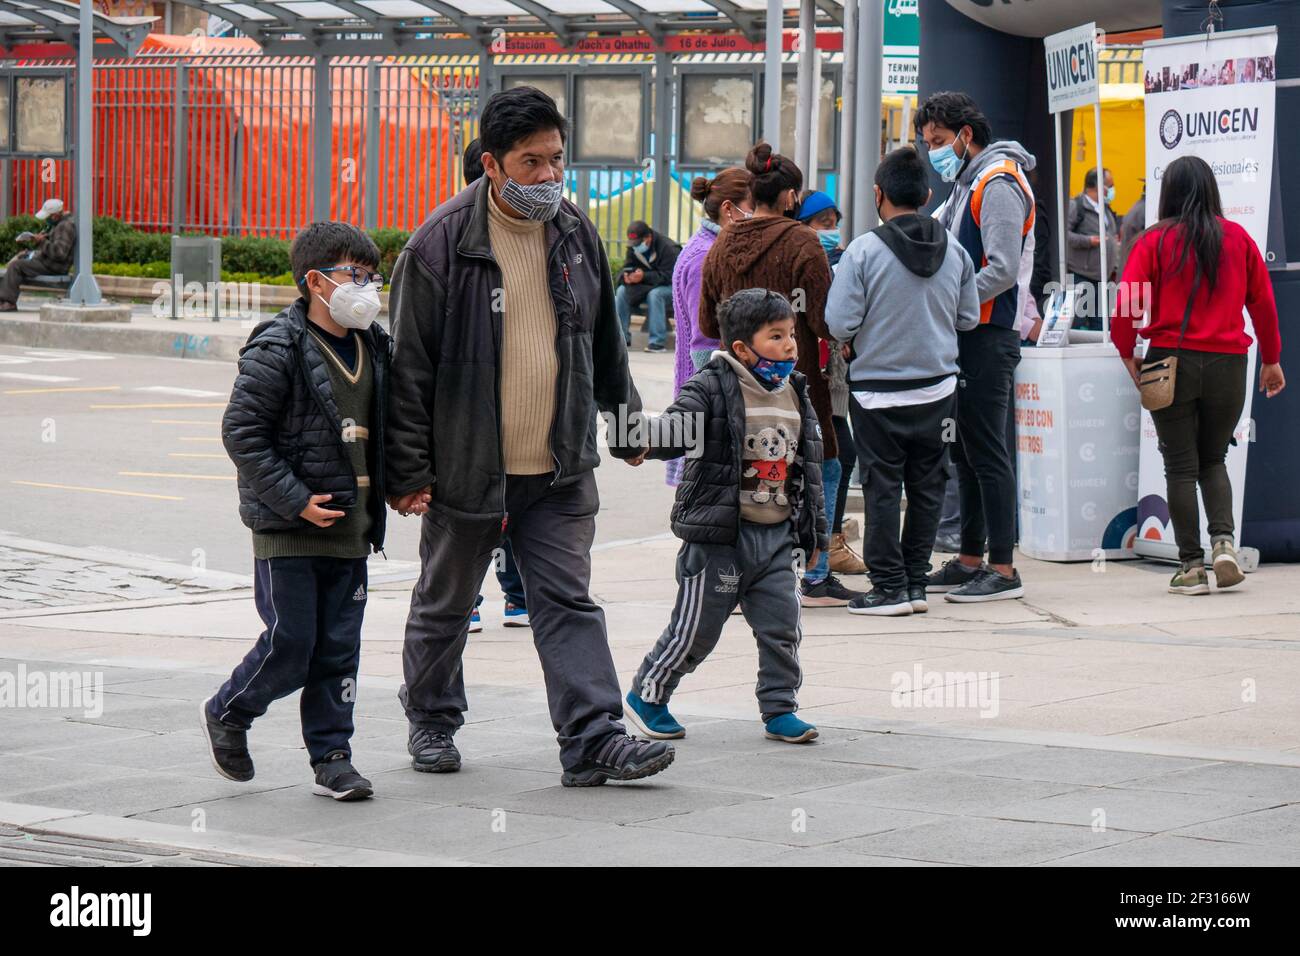 El Alto, La Paz, Bolivien - Februar 11 2021: Der indigene Mann Boliviens geht mit jeder Hand und hält sein Kind, alle tragen eine Maske Stockfoto